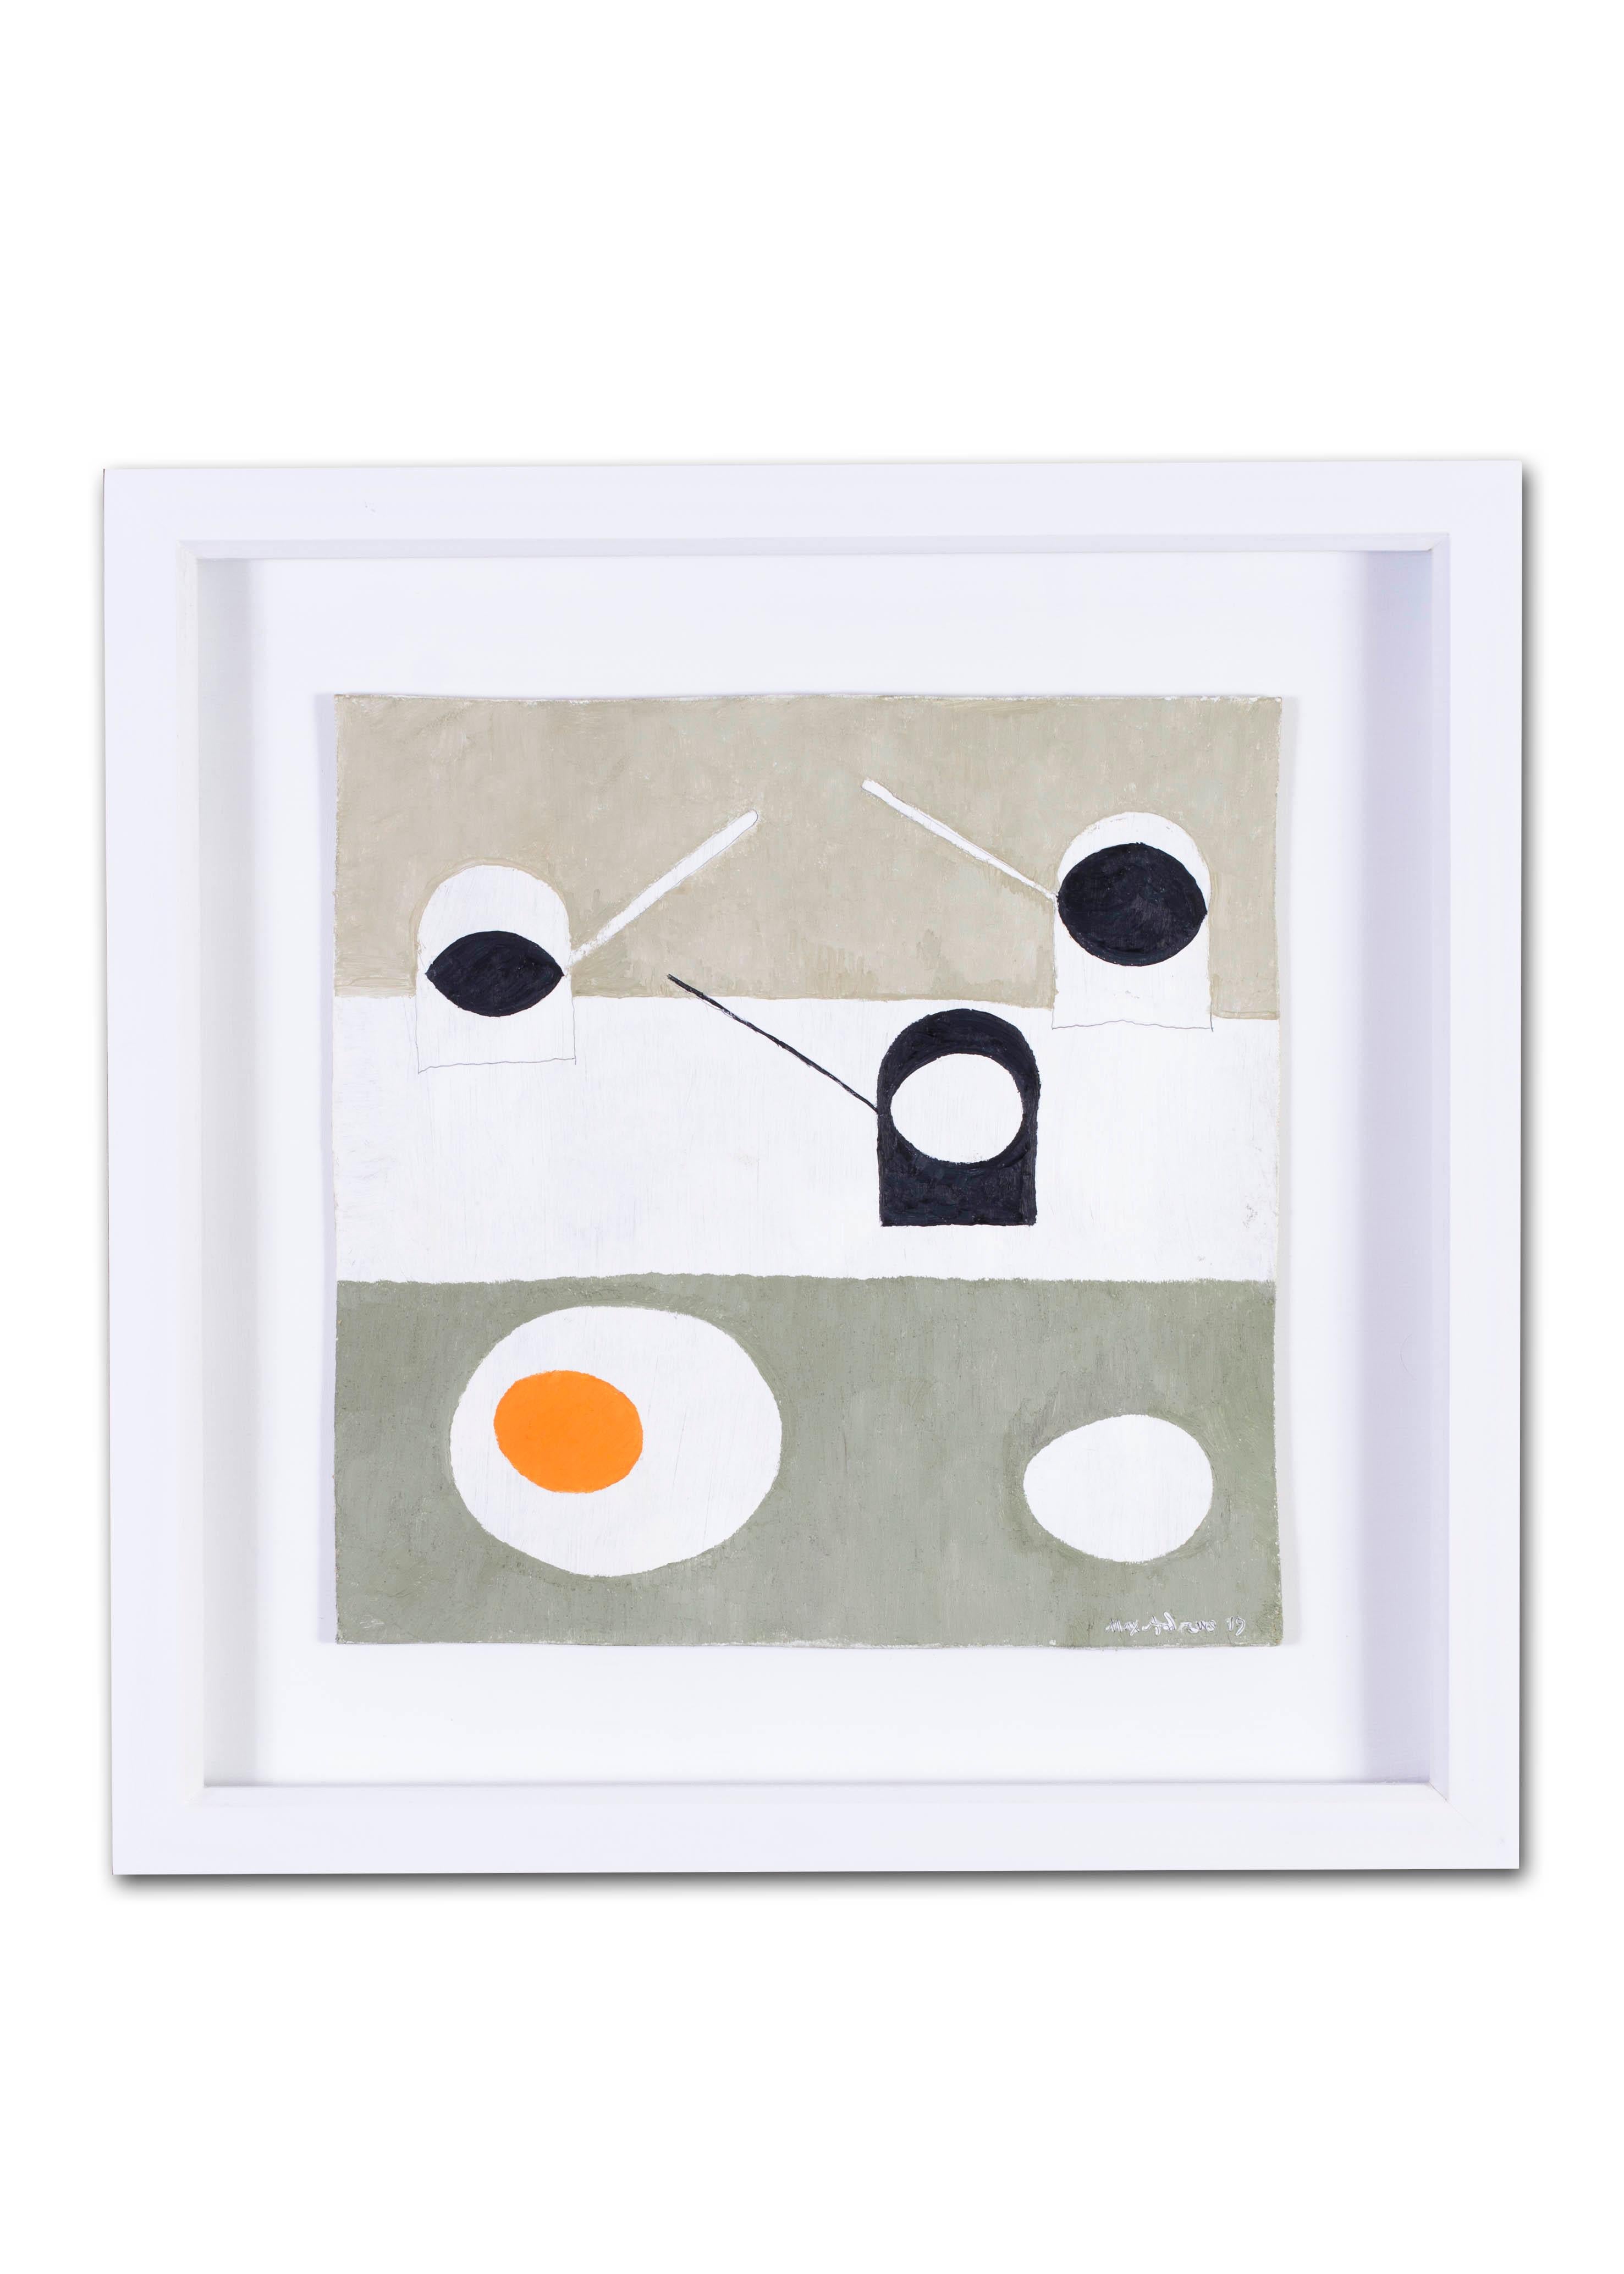 British, 21st Century abstract still life 'Eggs on pans II' 2